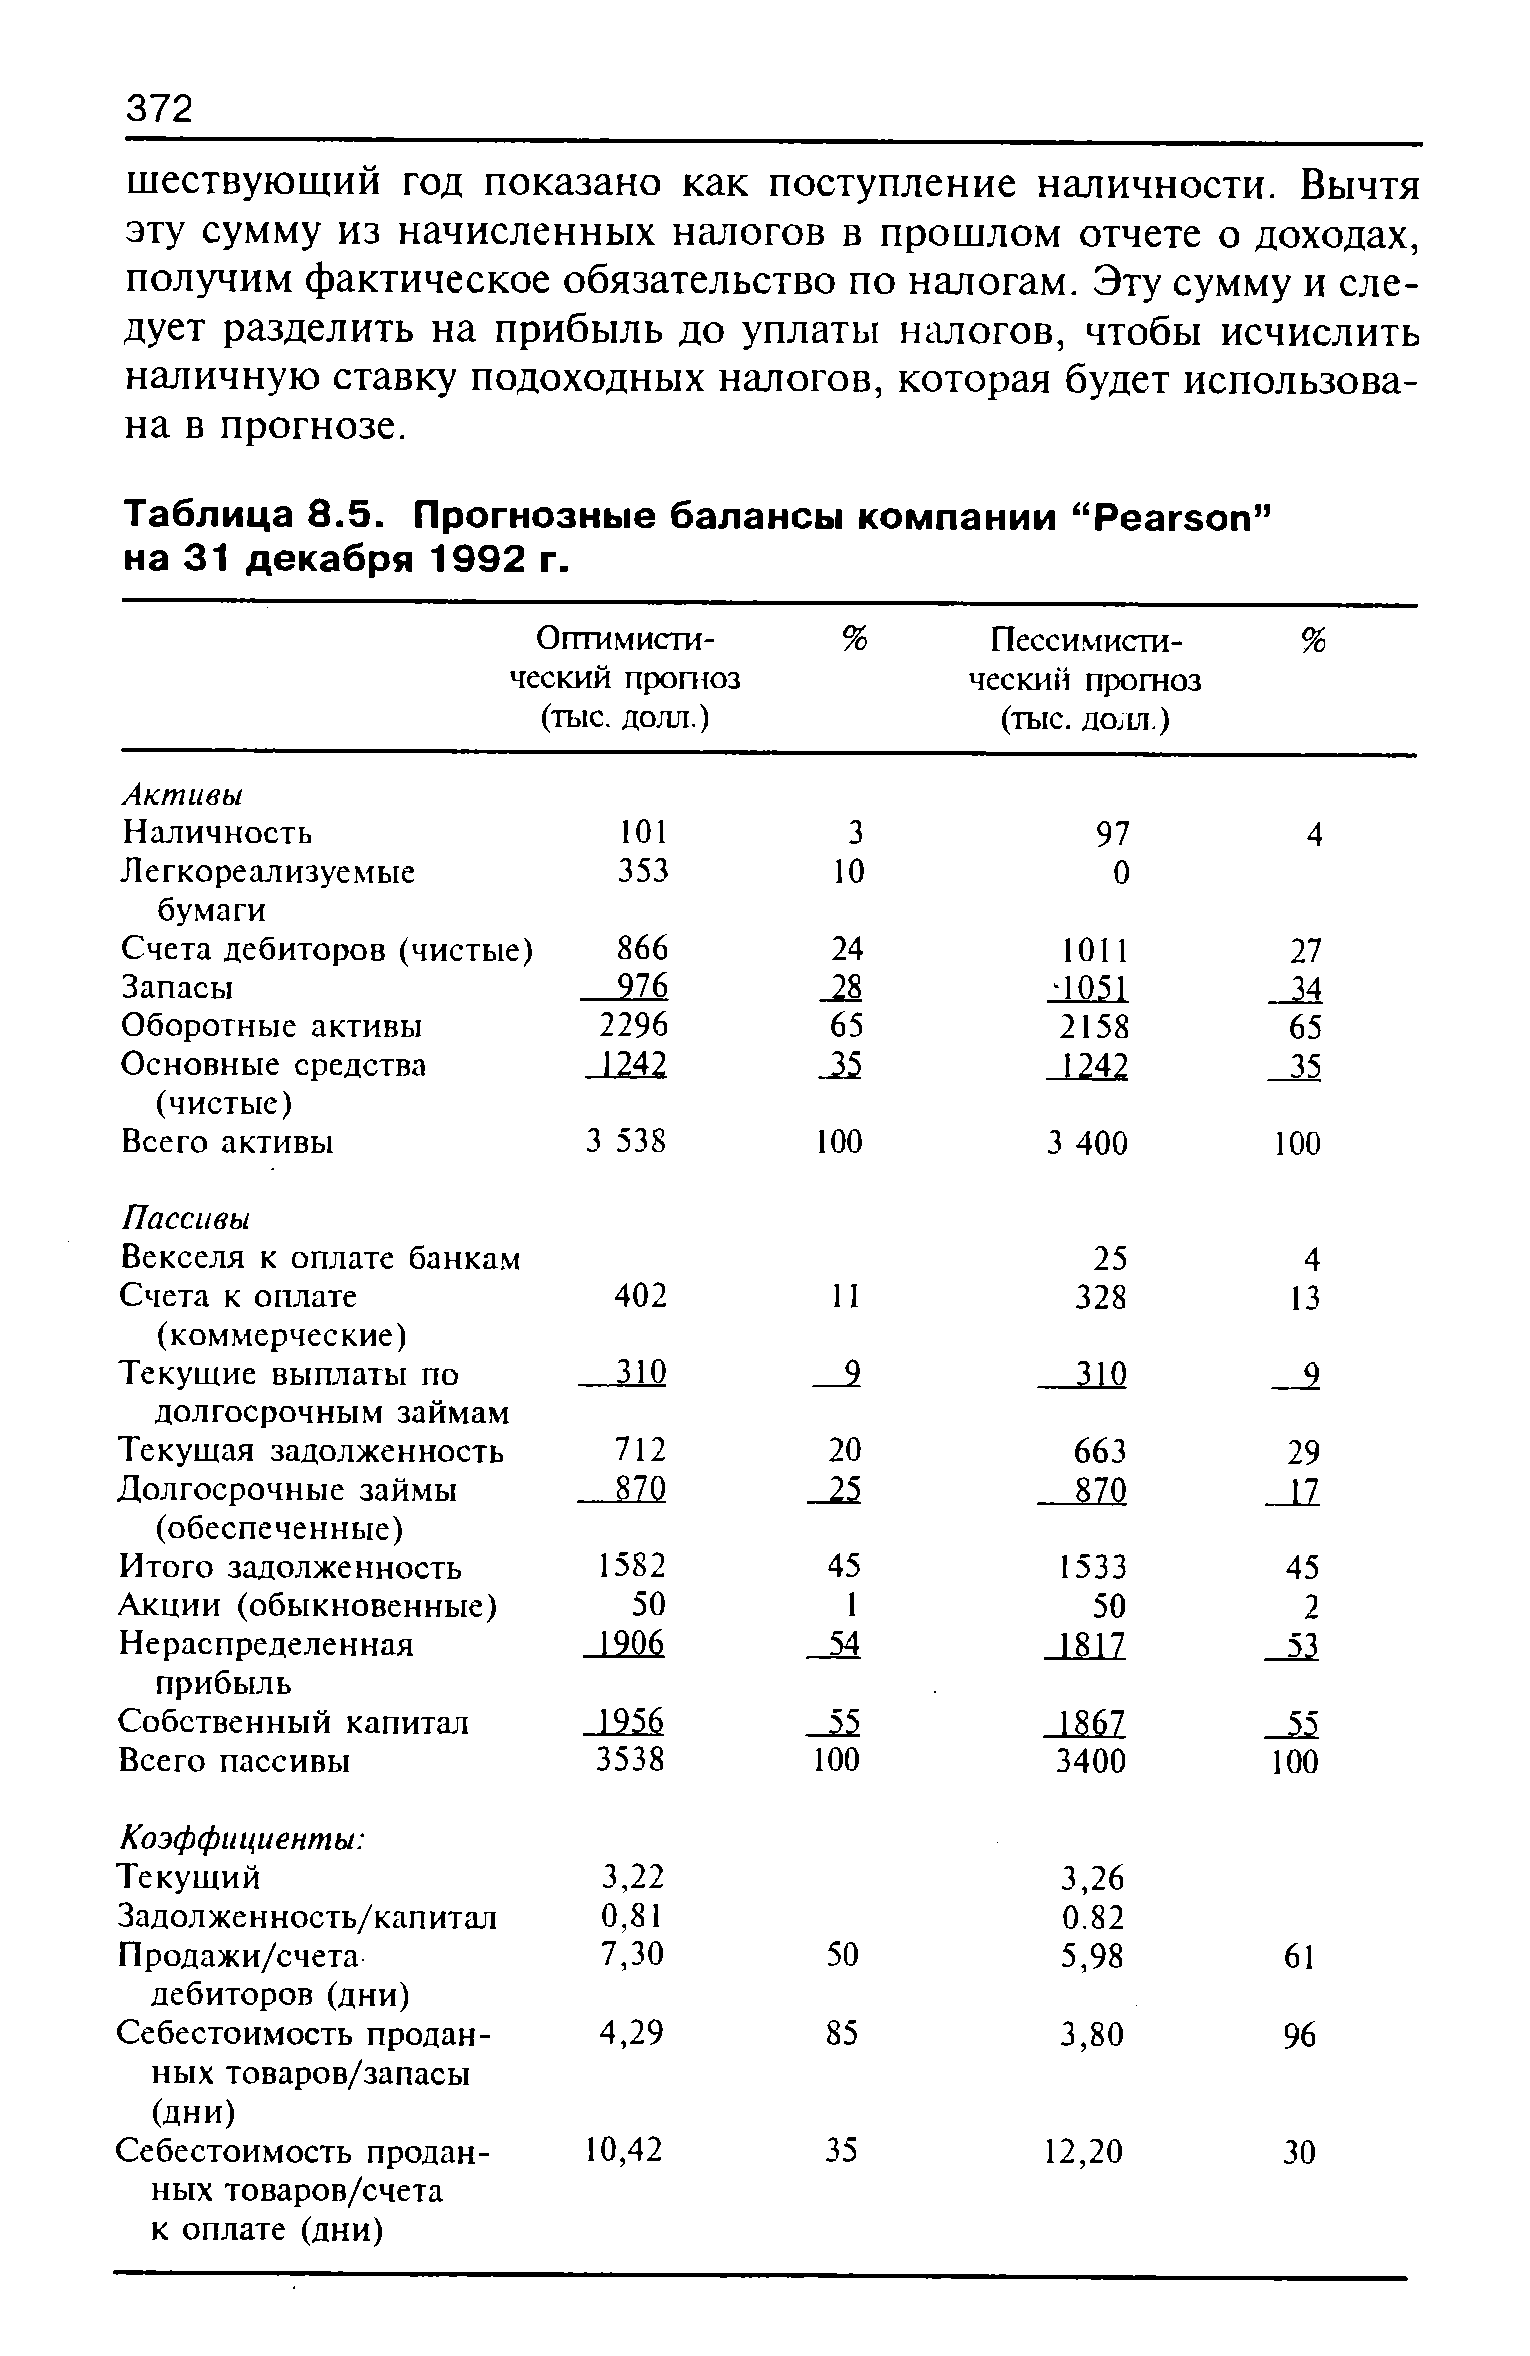 Таблица 8.5. Прогнозные балансы компании "Pearson" на 31 декабря 1992 г.
